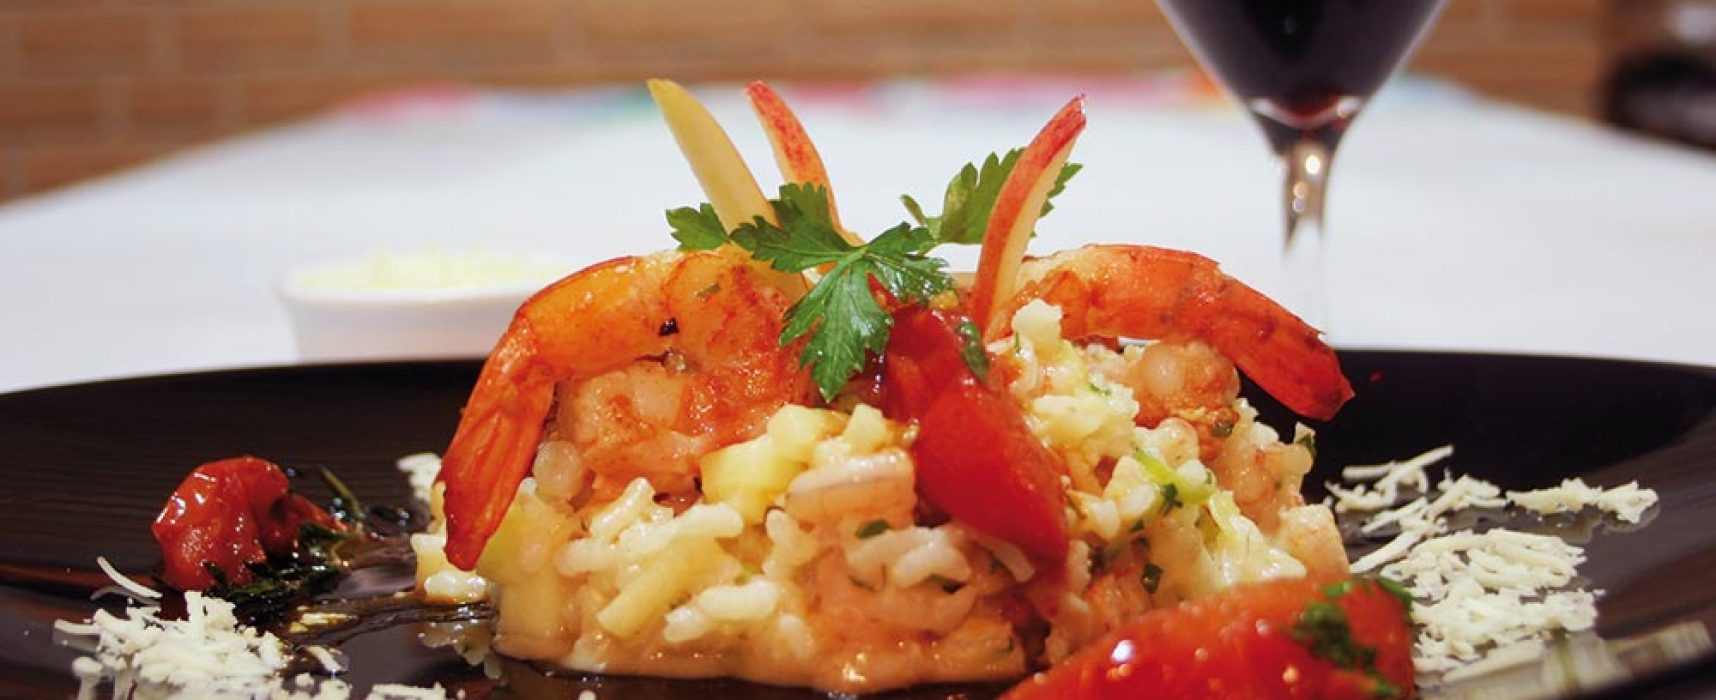 Quilombo é a nova opção de restaurante no Perequê